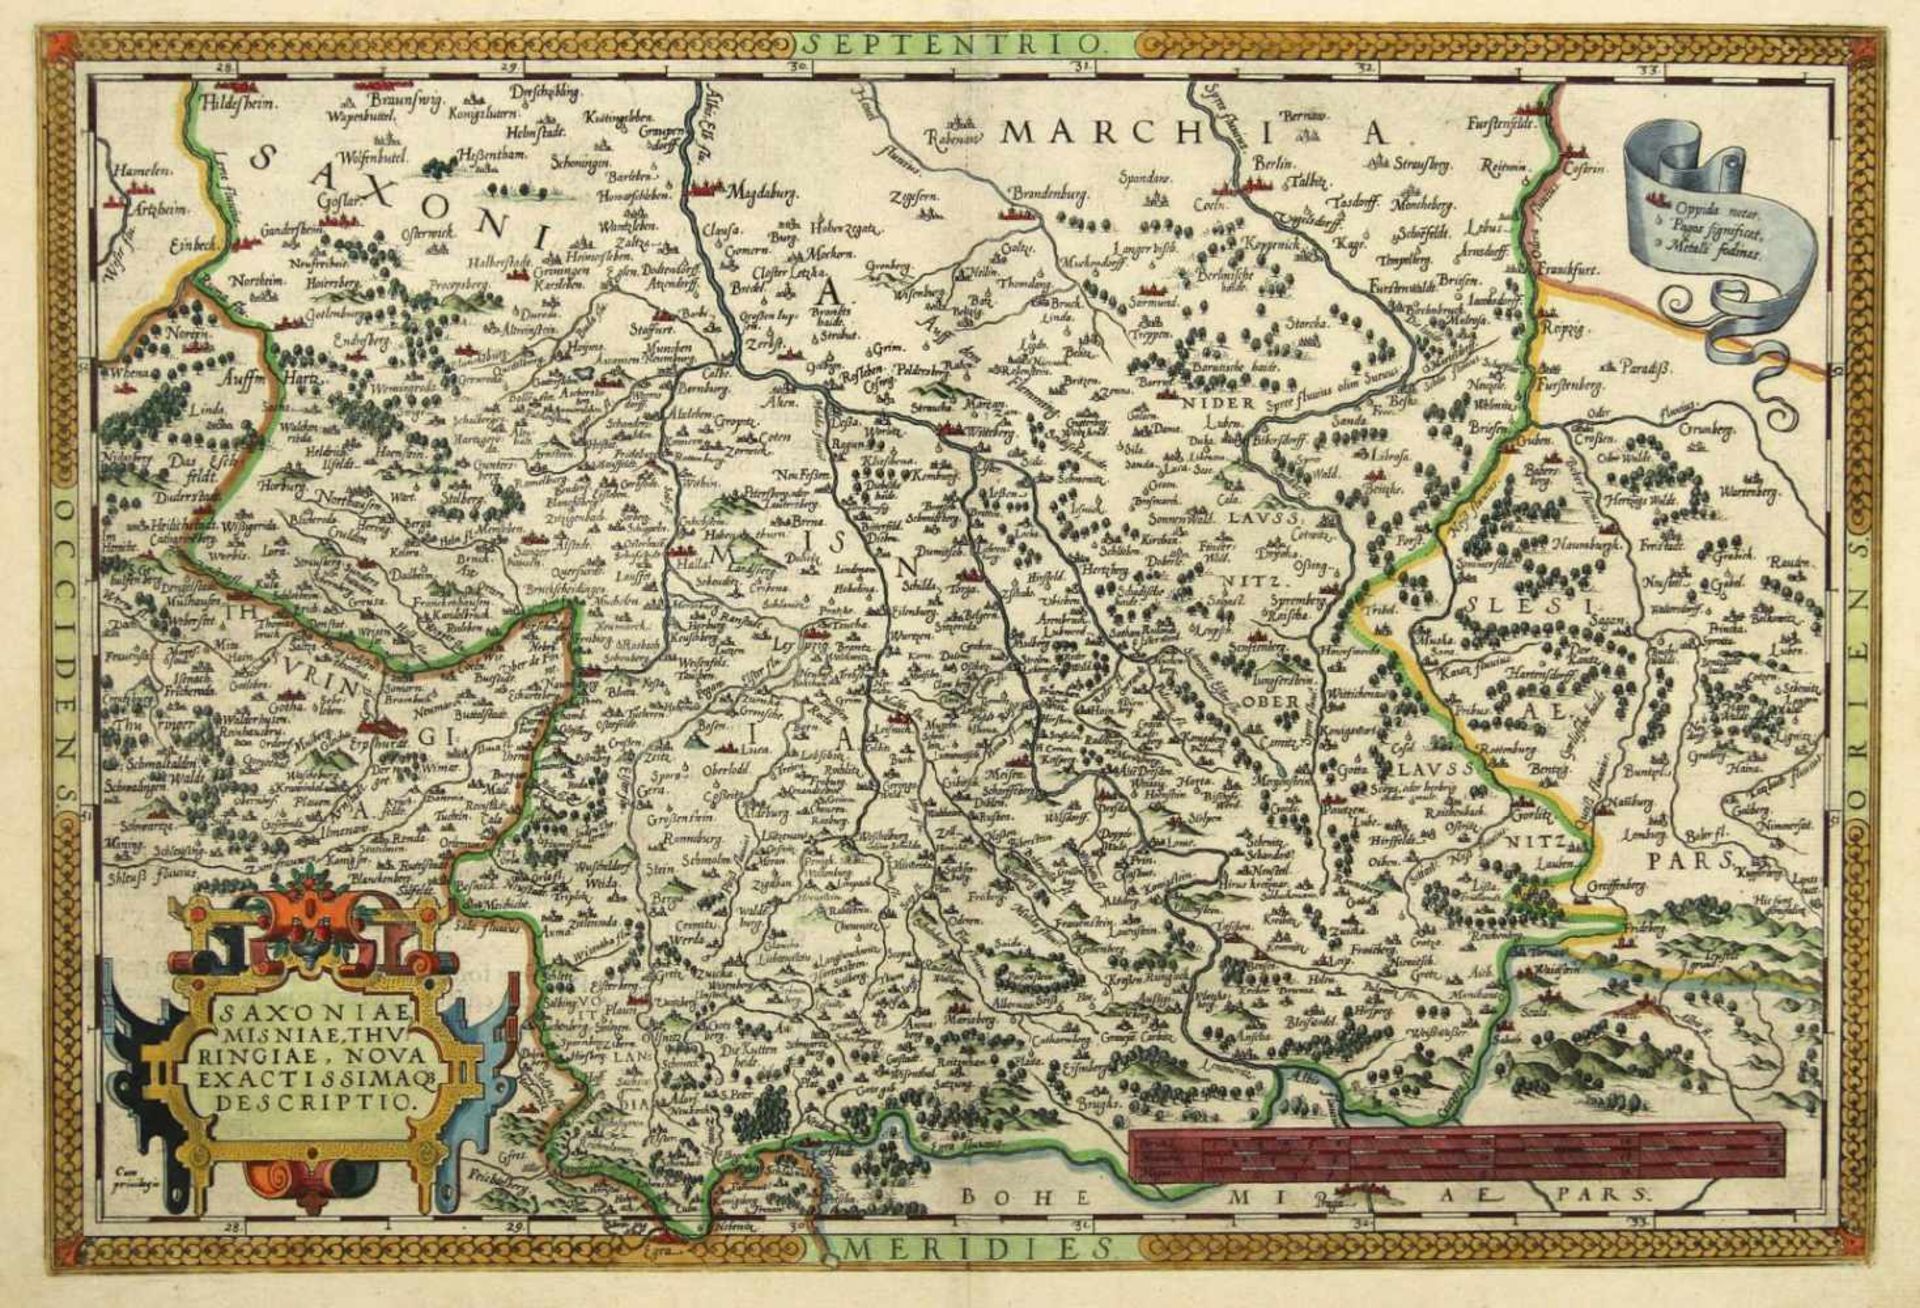 Sachsen. - Sachsen. - Saxoniae, Misniae, Thuringiae, Nova Exactissima qe Descriptio. Cum